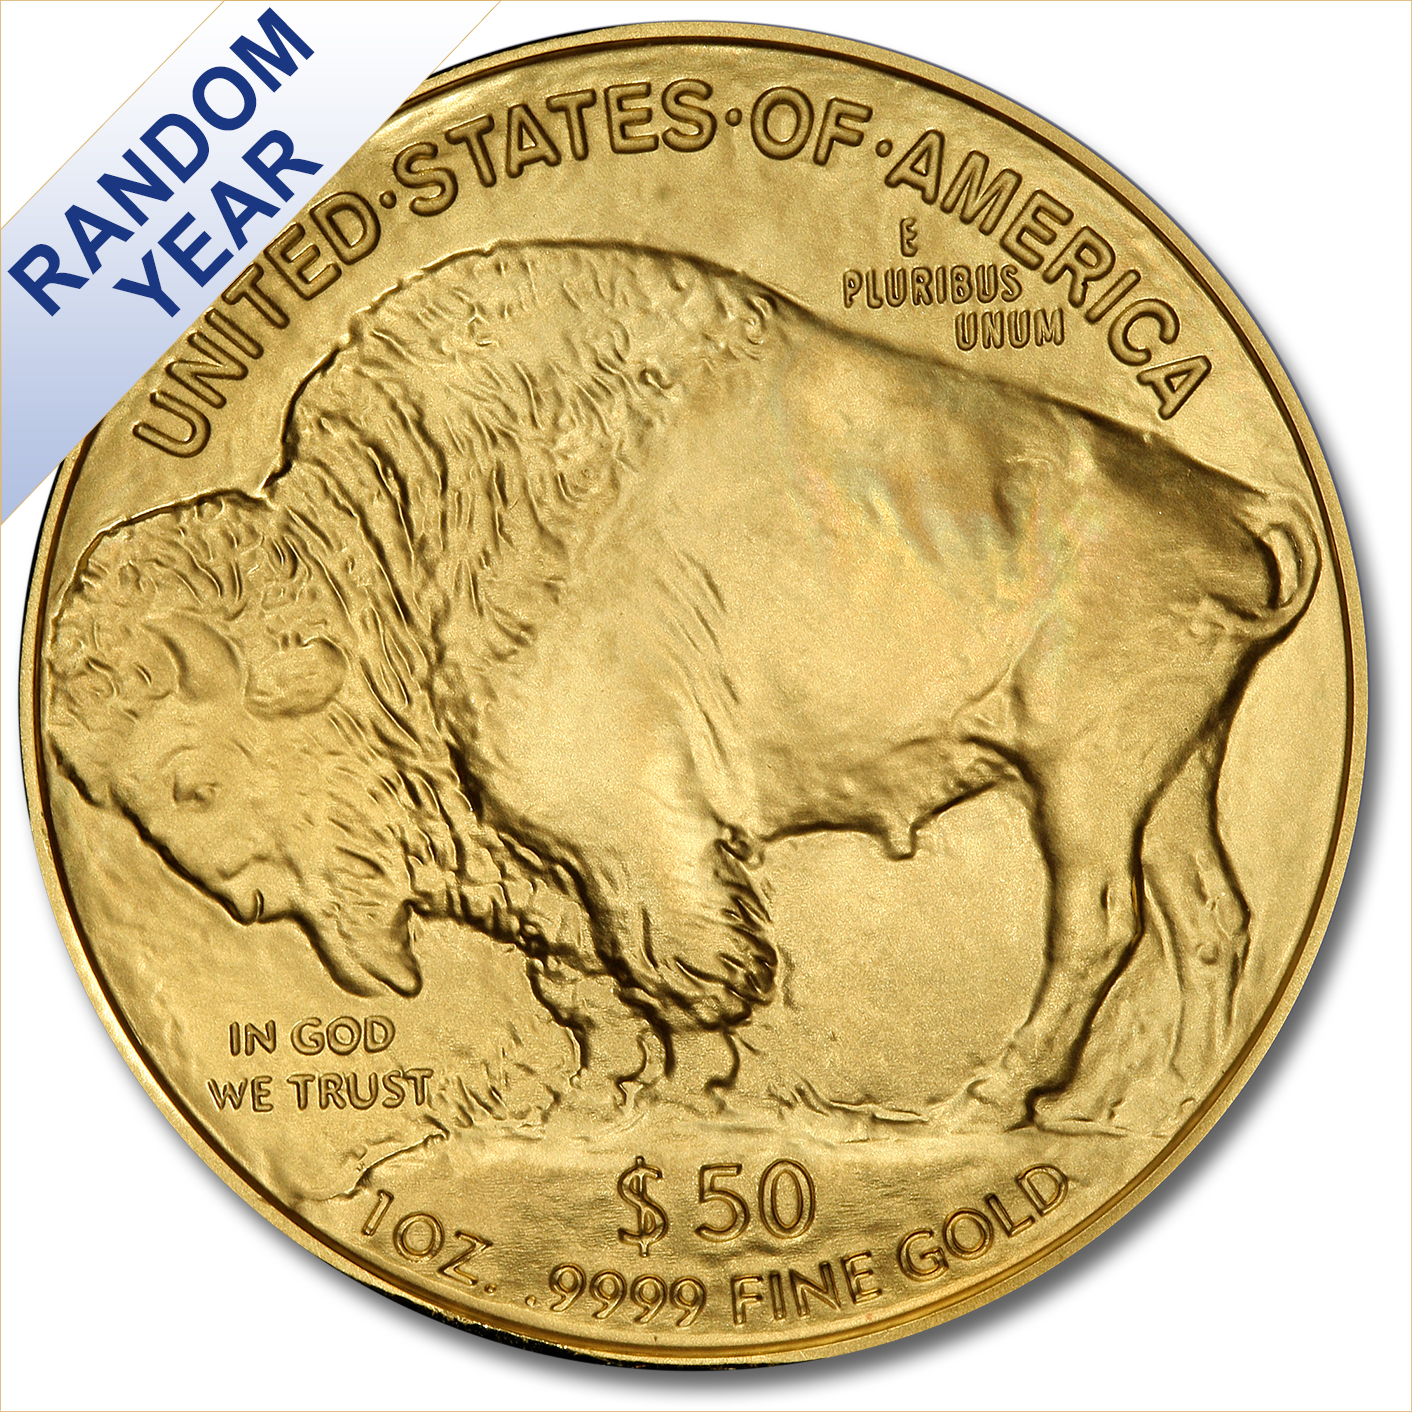 Uncirculated Gold Buffalo Coin One Ounce (Random Year)